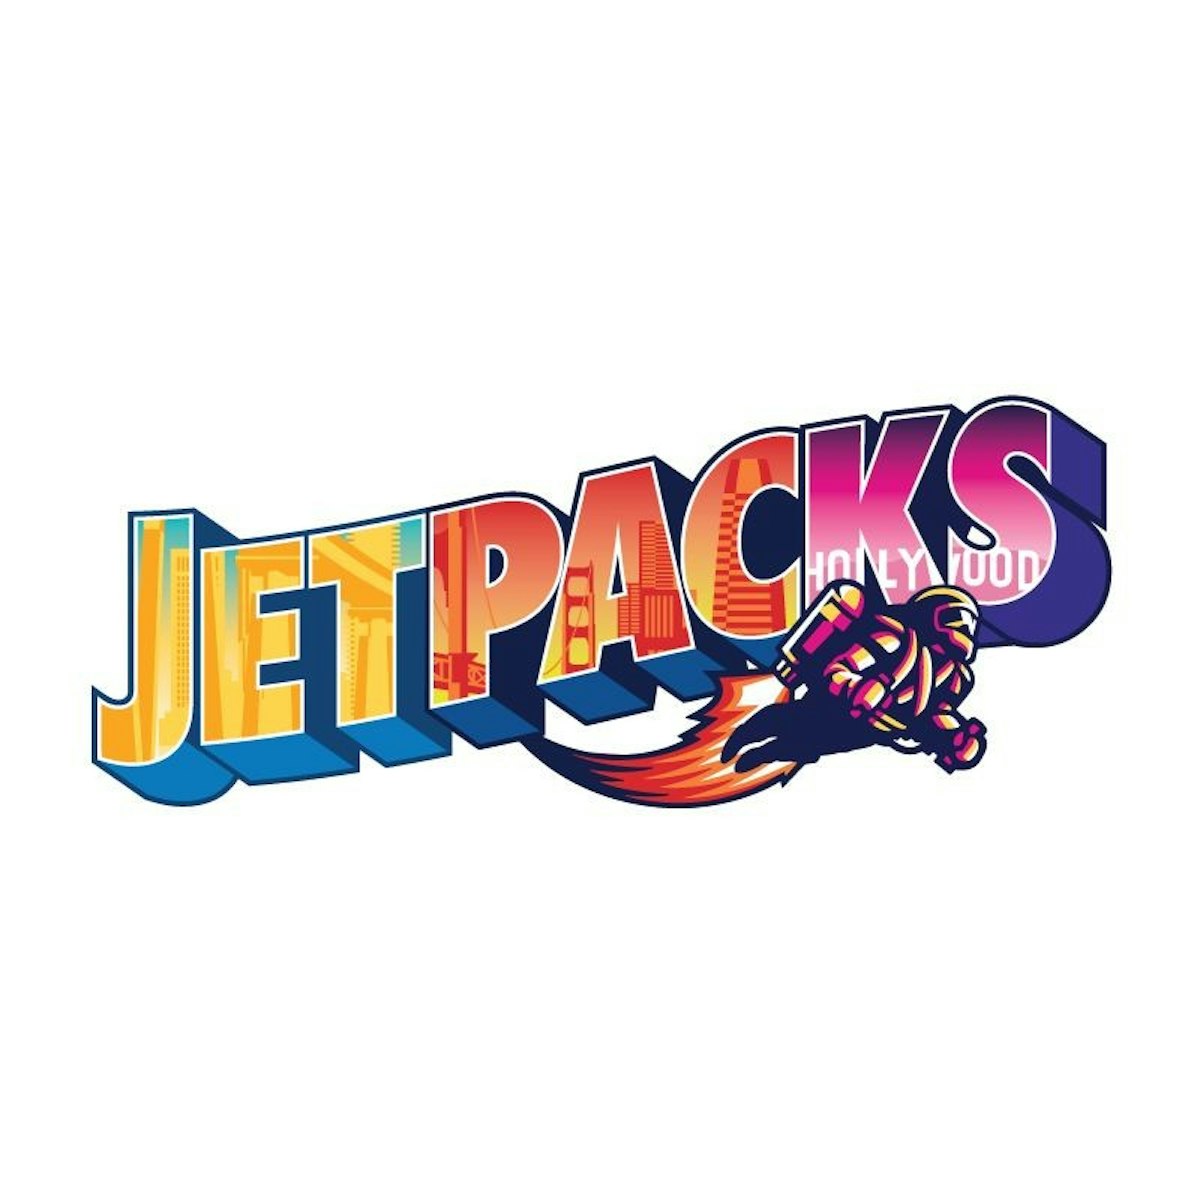 Jetpacks: Get Sky High